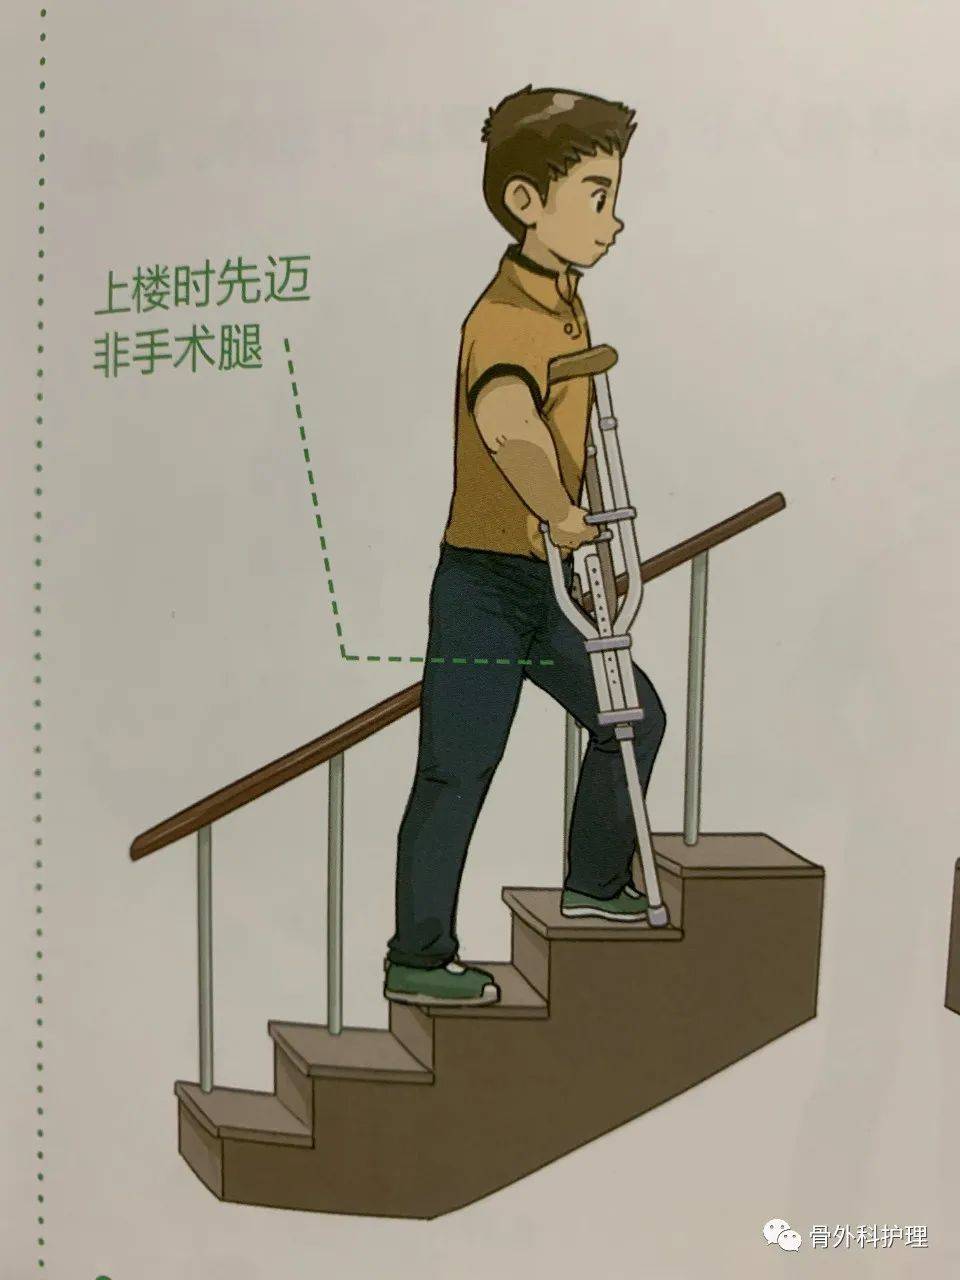 图解:髋关节置换术后上下楼的方法及行走的注意事项